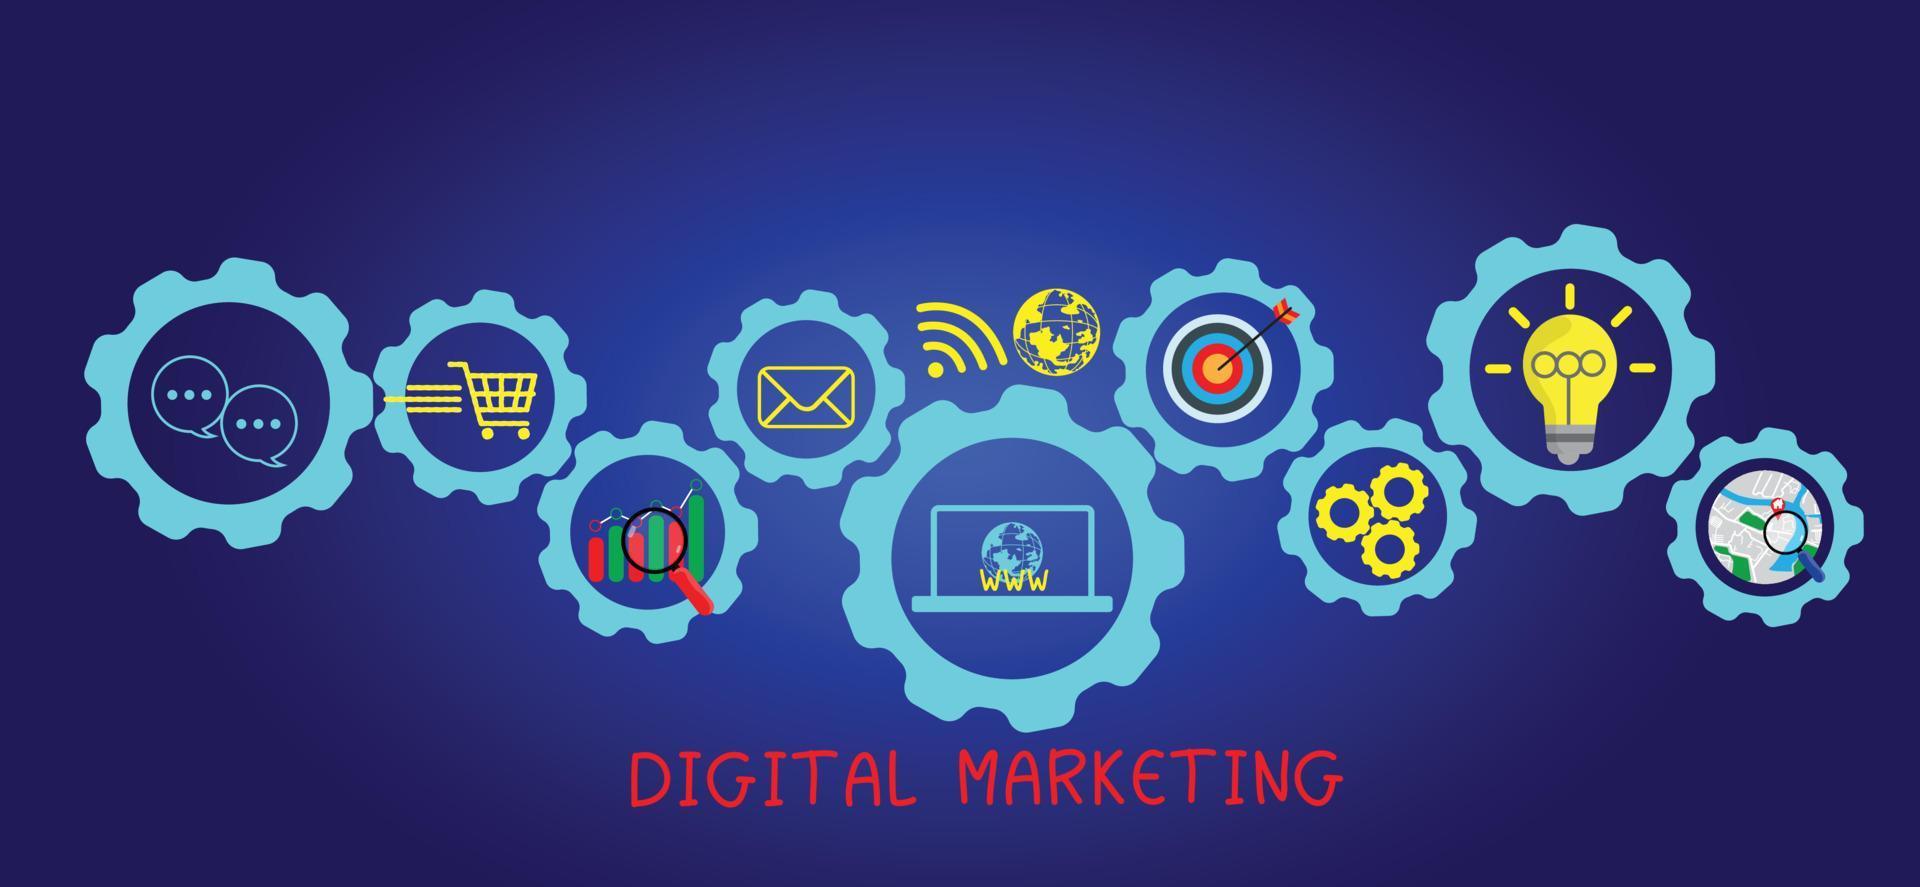 concetto digitale marketing materiale pubblicizzare il tuo sito web, e-mail, sociale Rete, seo, video, mobile App con icone e analizzare roi e strategia. vettore